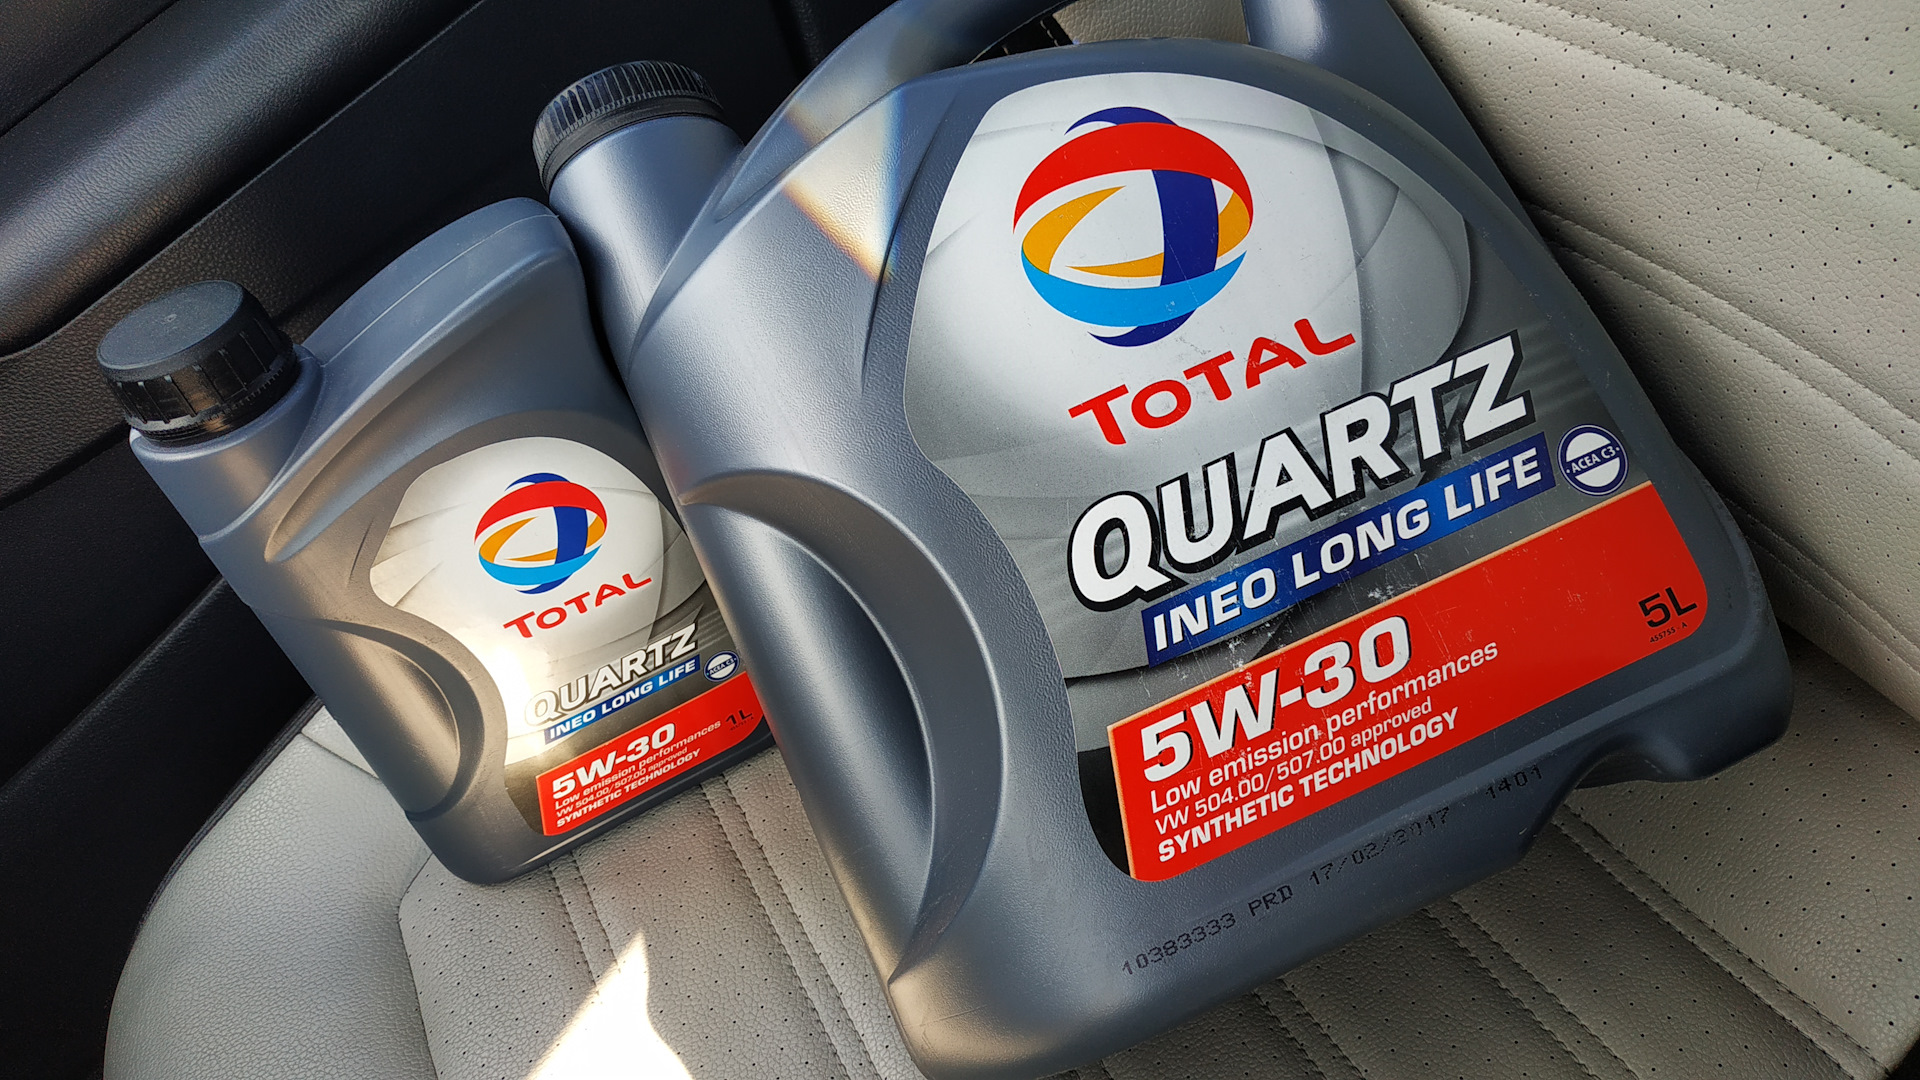 Моторное масло total quartz 9000 5w-30: каким автомобилям подходит